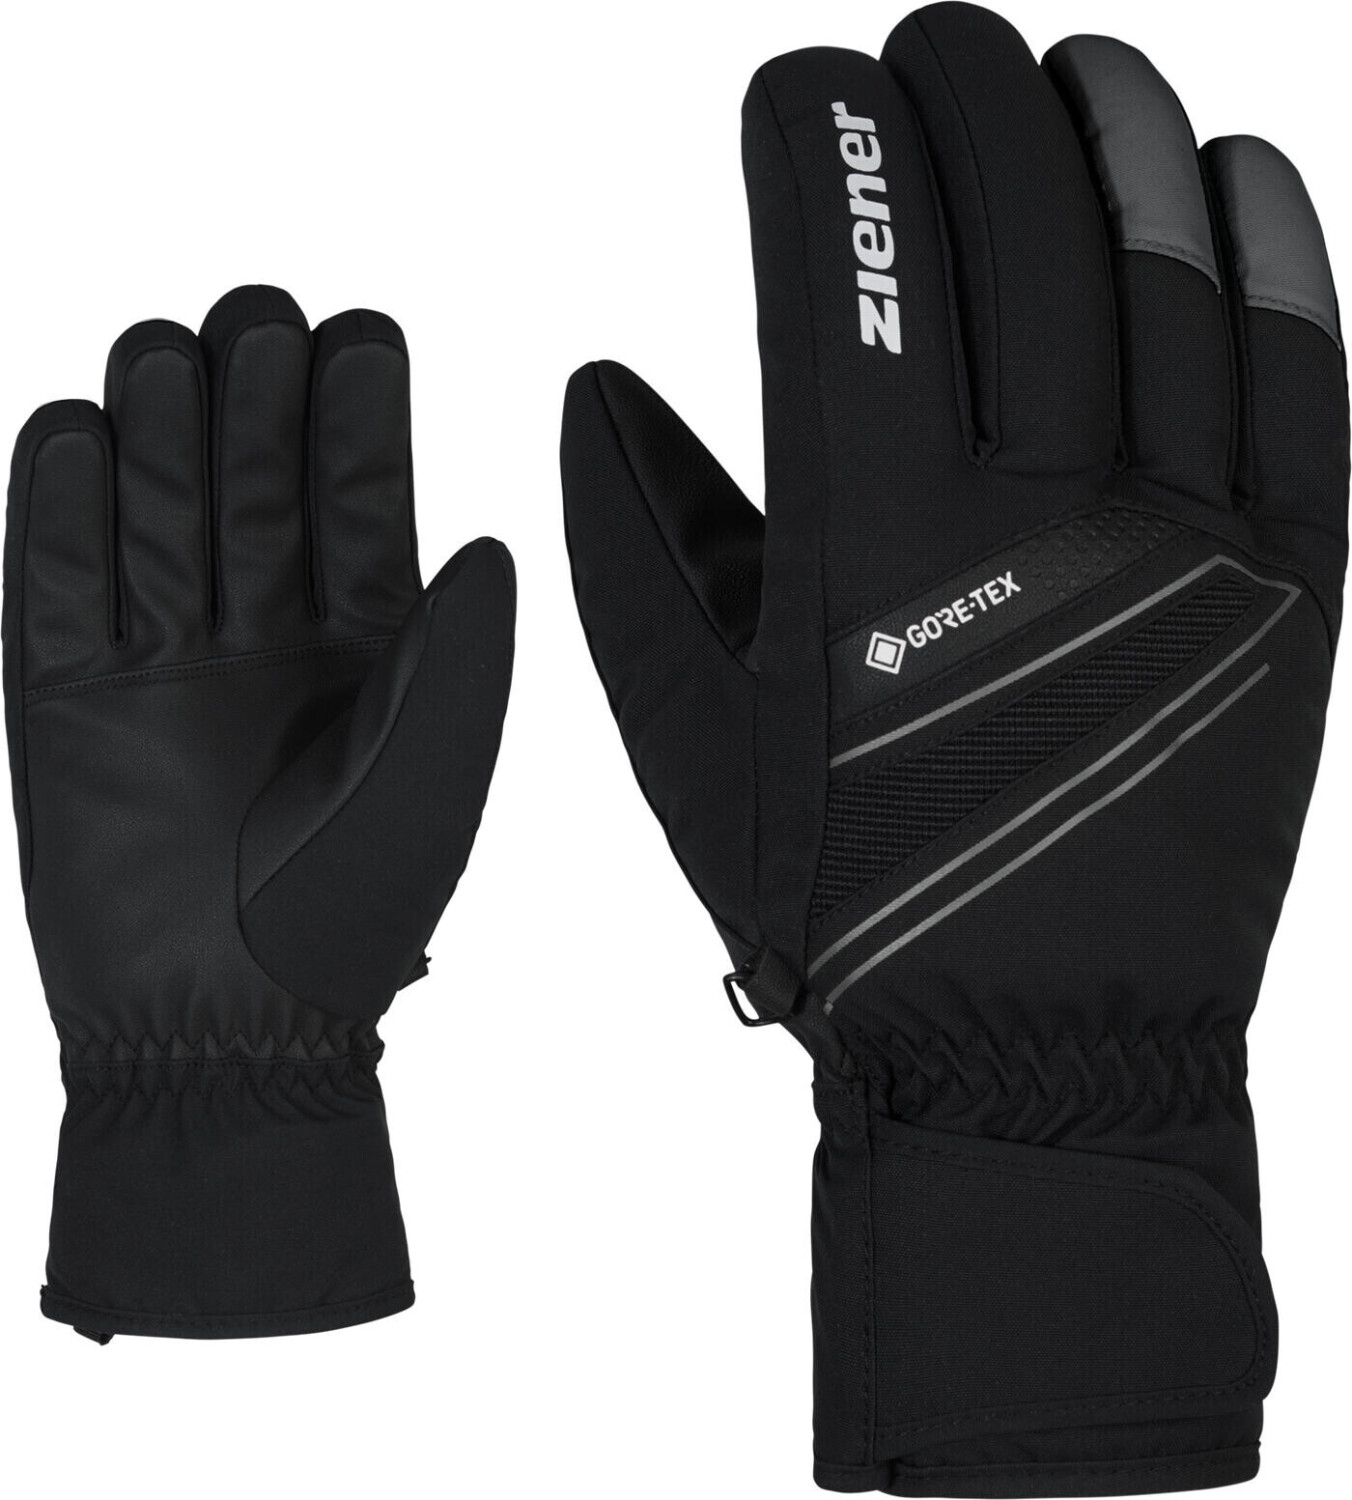 Ziener Gunar GTX Glove Ski Alpine (801083) ab 40,20 € | Preisvergleich bei